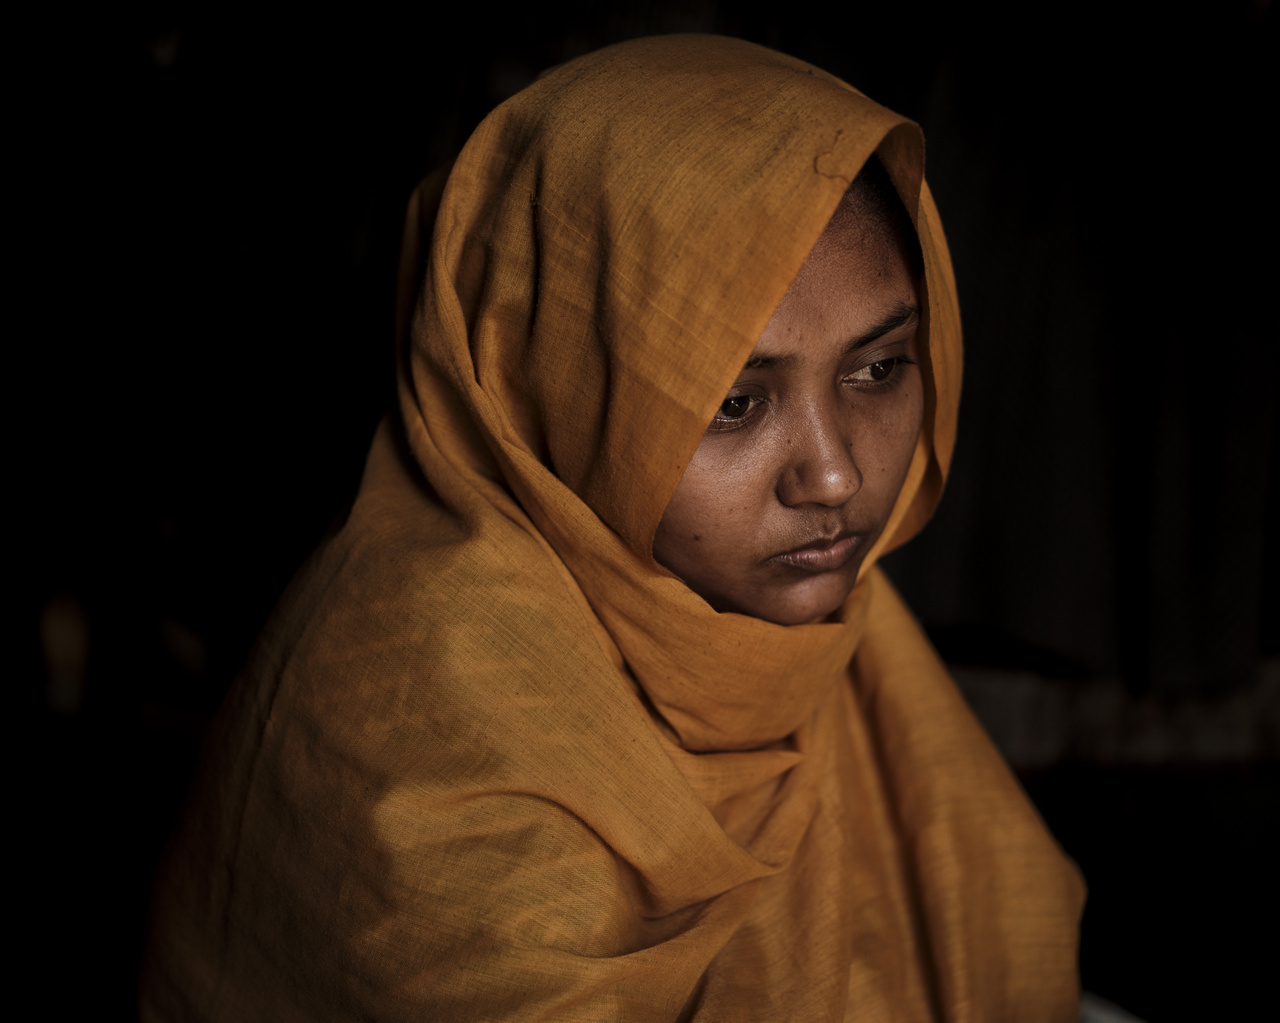 A 20 éves Shafika a Tula Toli faluban történt mészárlás egyik túlélője. Három hónapja voltak házasok a férjével, aki csatlakozott a hadsereg ellen botokkal felvonuló falusiakhoz azon a napon, amikor a falujukat lerombolták. A férjét lelőtték a többi falubelivel együtt.